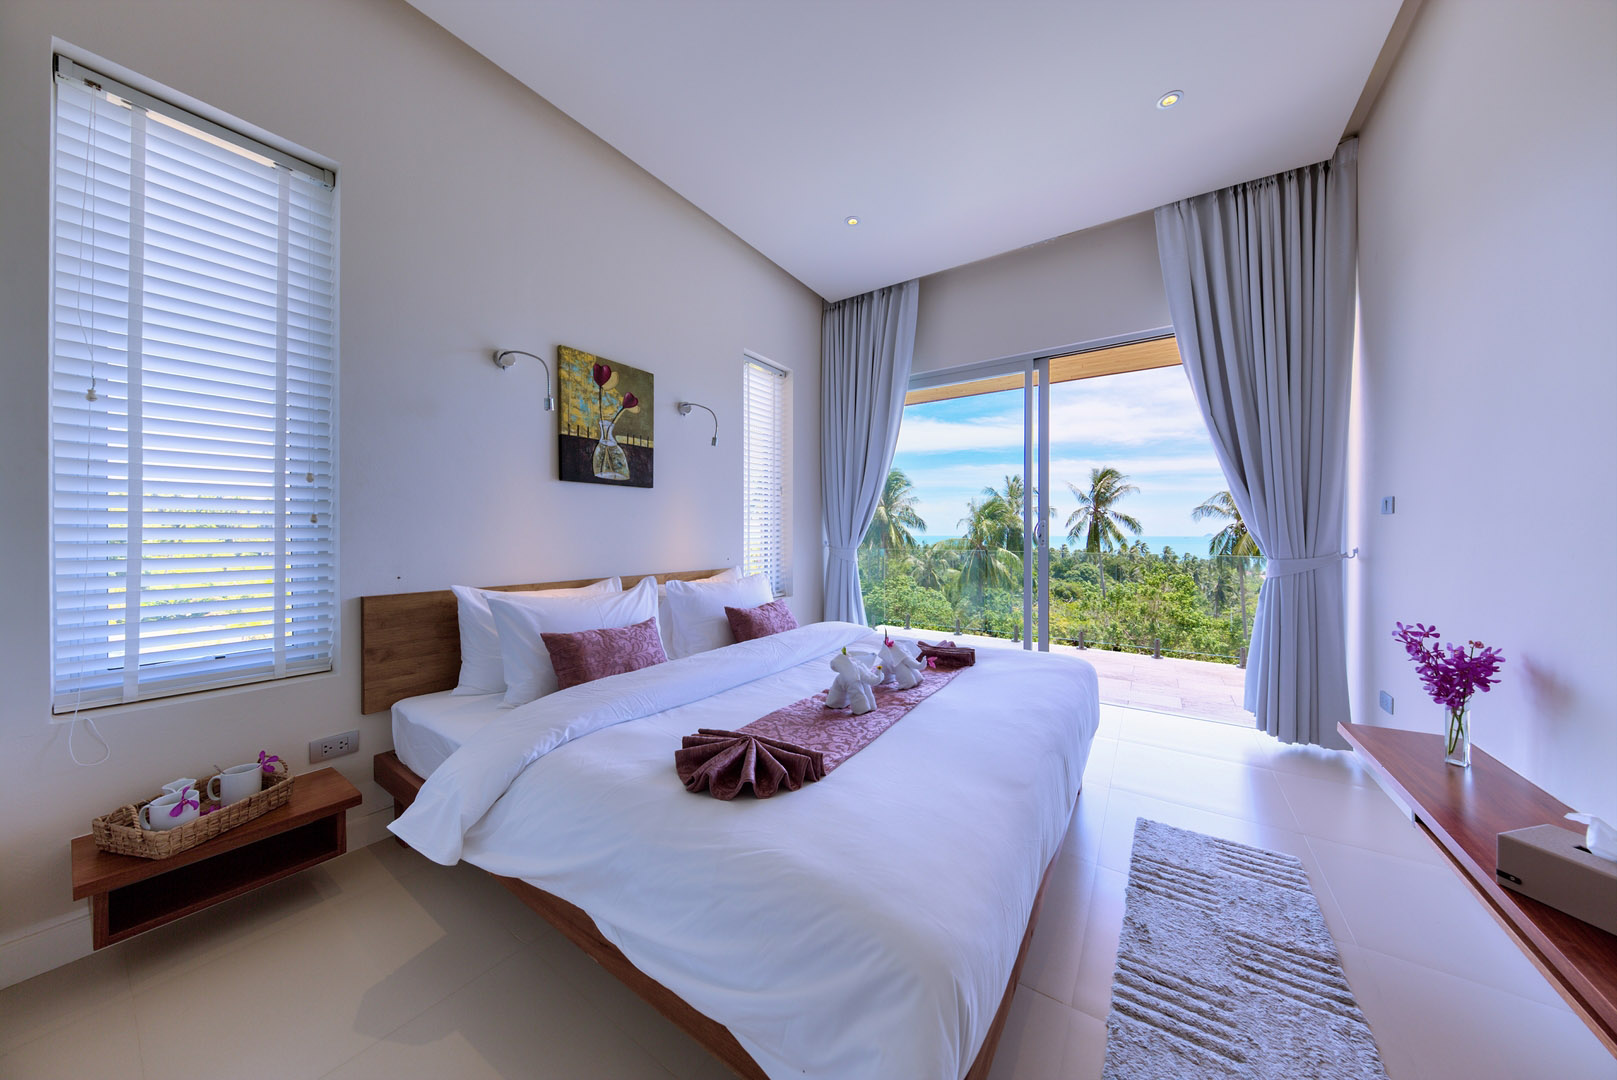 Panoramic 3 Bedroom Seaview Pool Villa in Bang Por for Sale: Panoramic 3 Bedroom Seaview Pool Villa in Bang Por for Sale